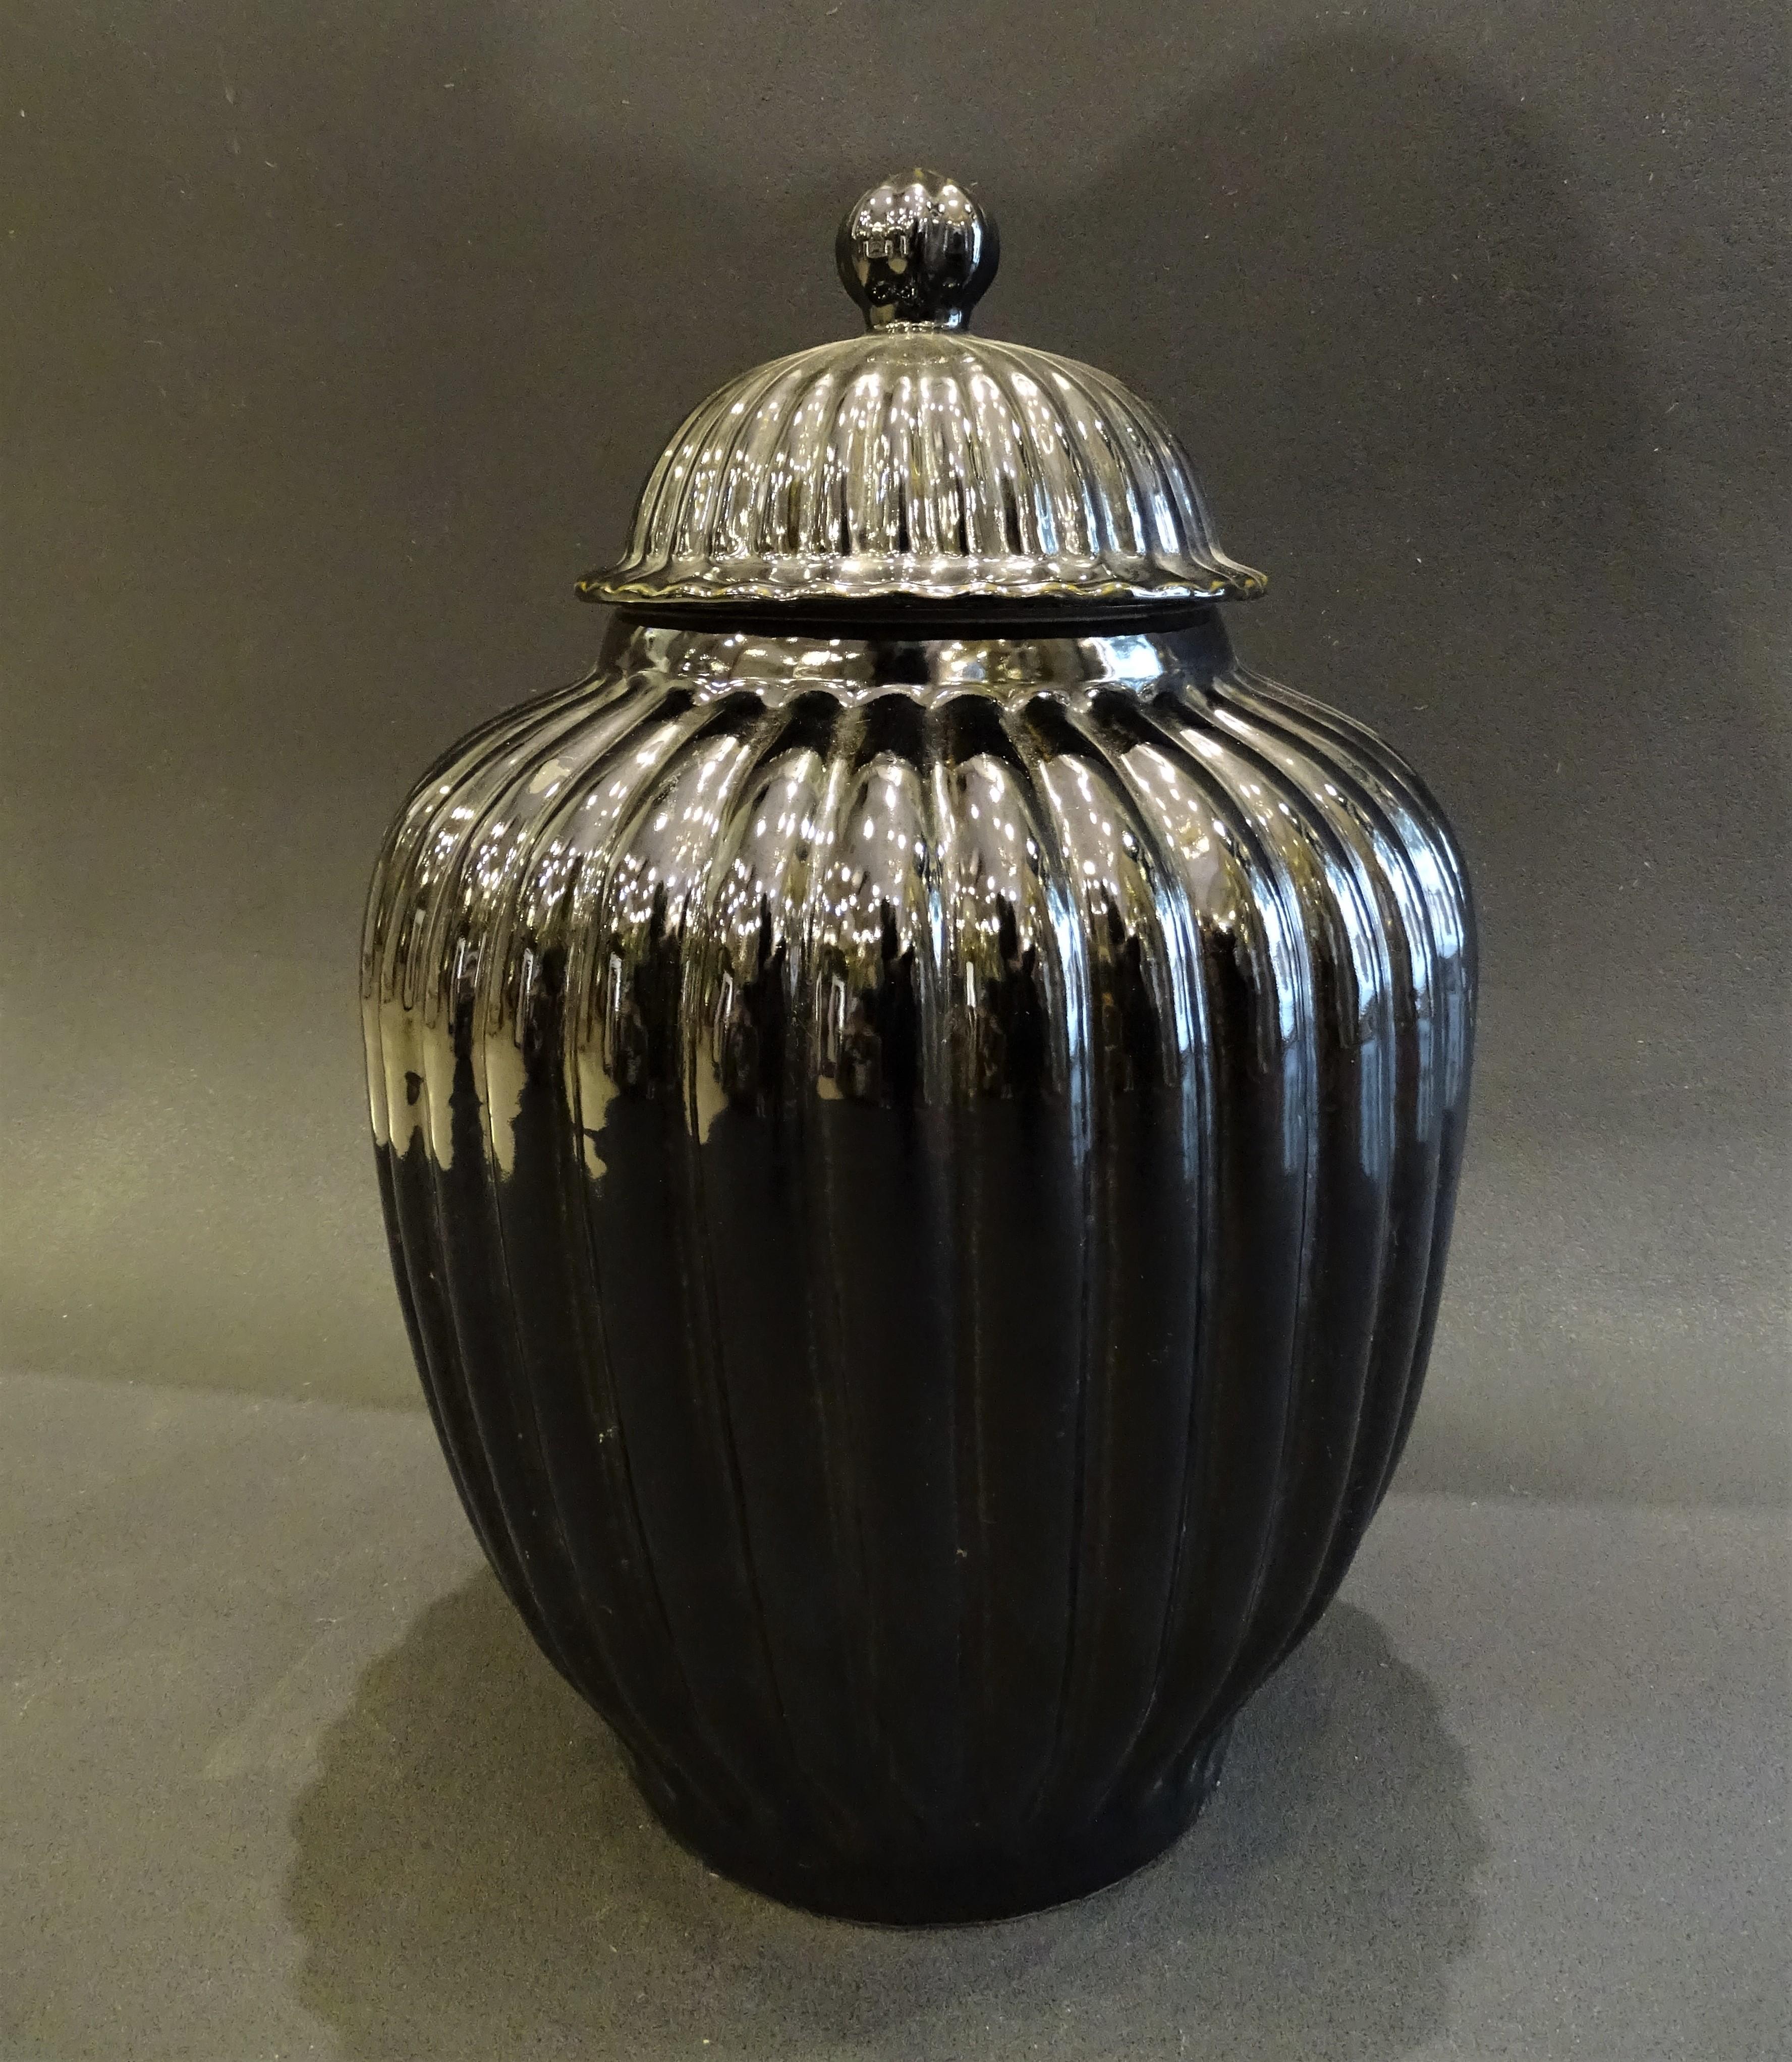 Paire étonnante d'italiens noirs  vases ou Bucaros avec couvercle, en céramique noire, de grande taille et d'une grande force décorative dans leurs formes. Les pièces sont fabriquées à la main, de sorte que chaque pièce a une finition unique.

 Il